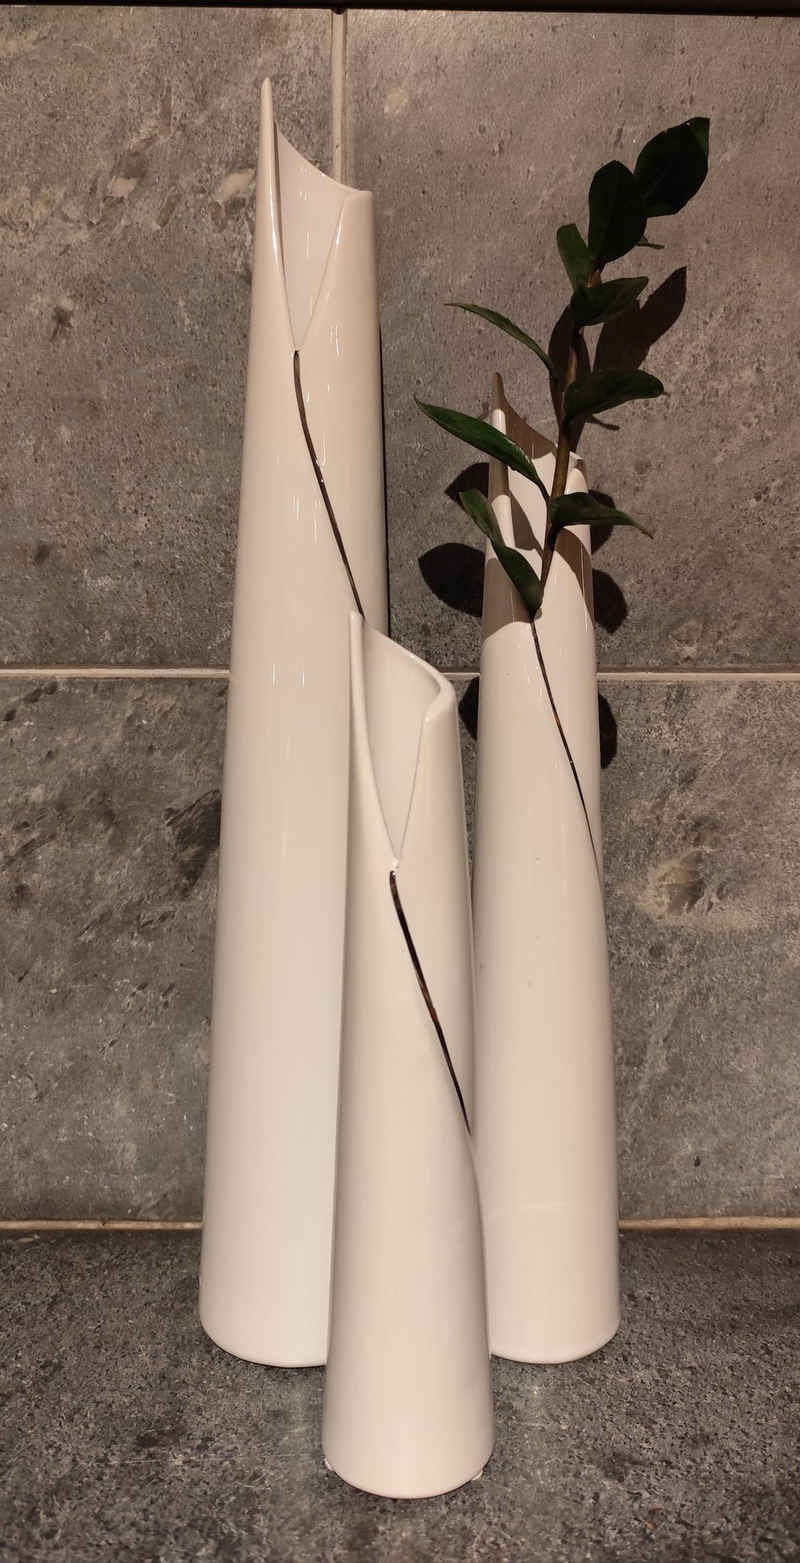 GlasArt Dekovase Blumenvase Vase Schlank weiß schlicht edel 30-50cm hoch, Wohnzimmer